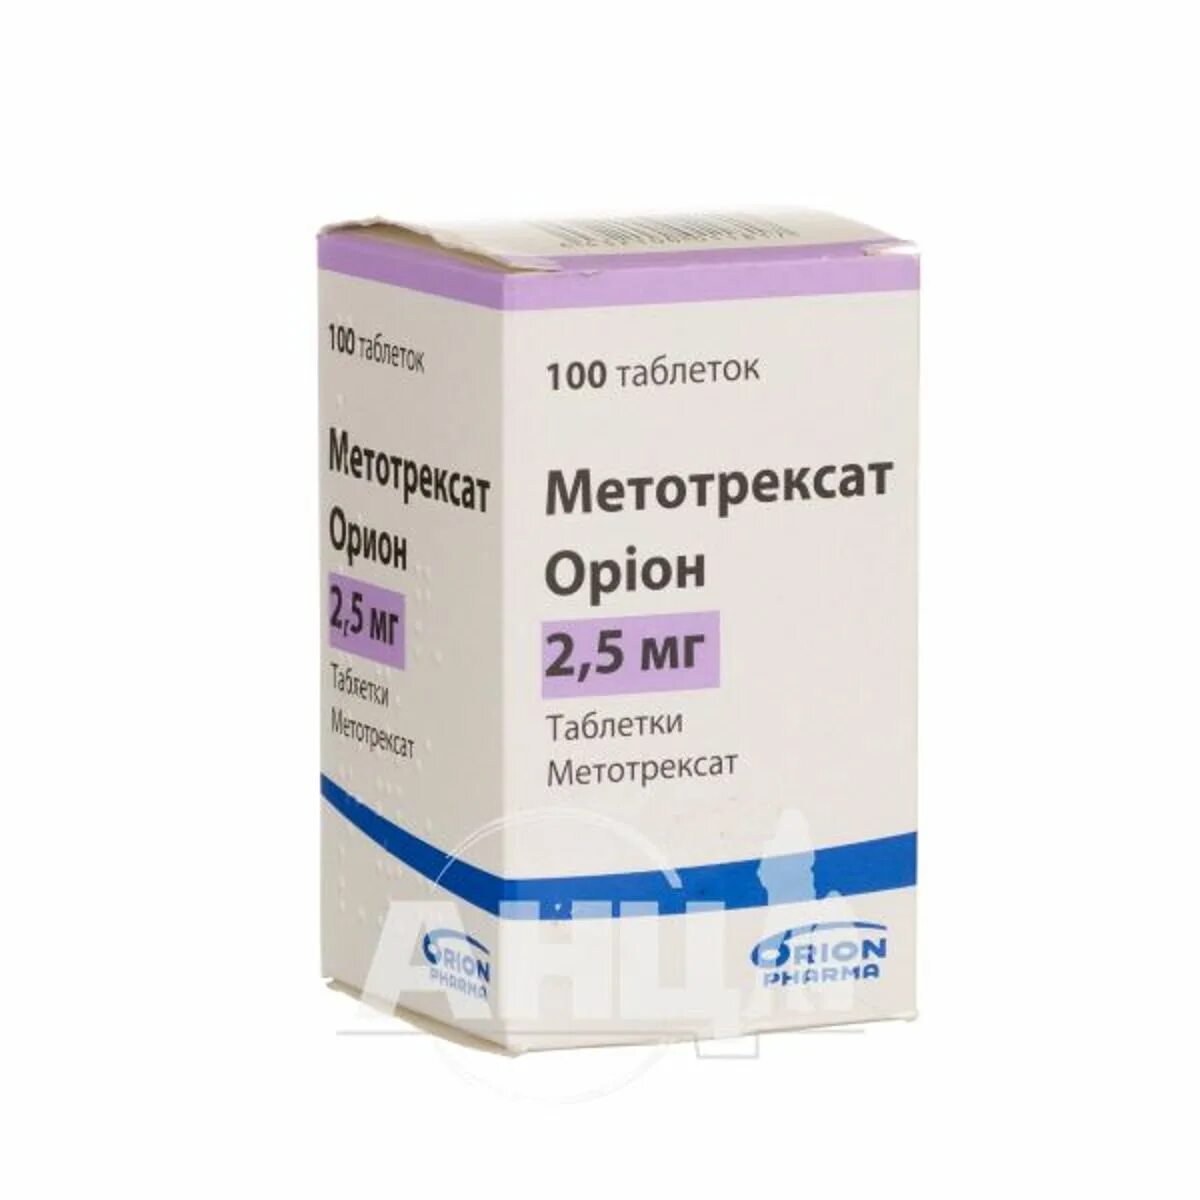 Метотрексат Орион 2.5 мг. Орион лекарство. Метотрексат Орион таблетки купить. Орион таблетки липидовосстанавливающий.